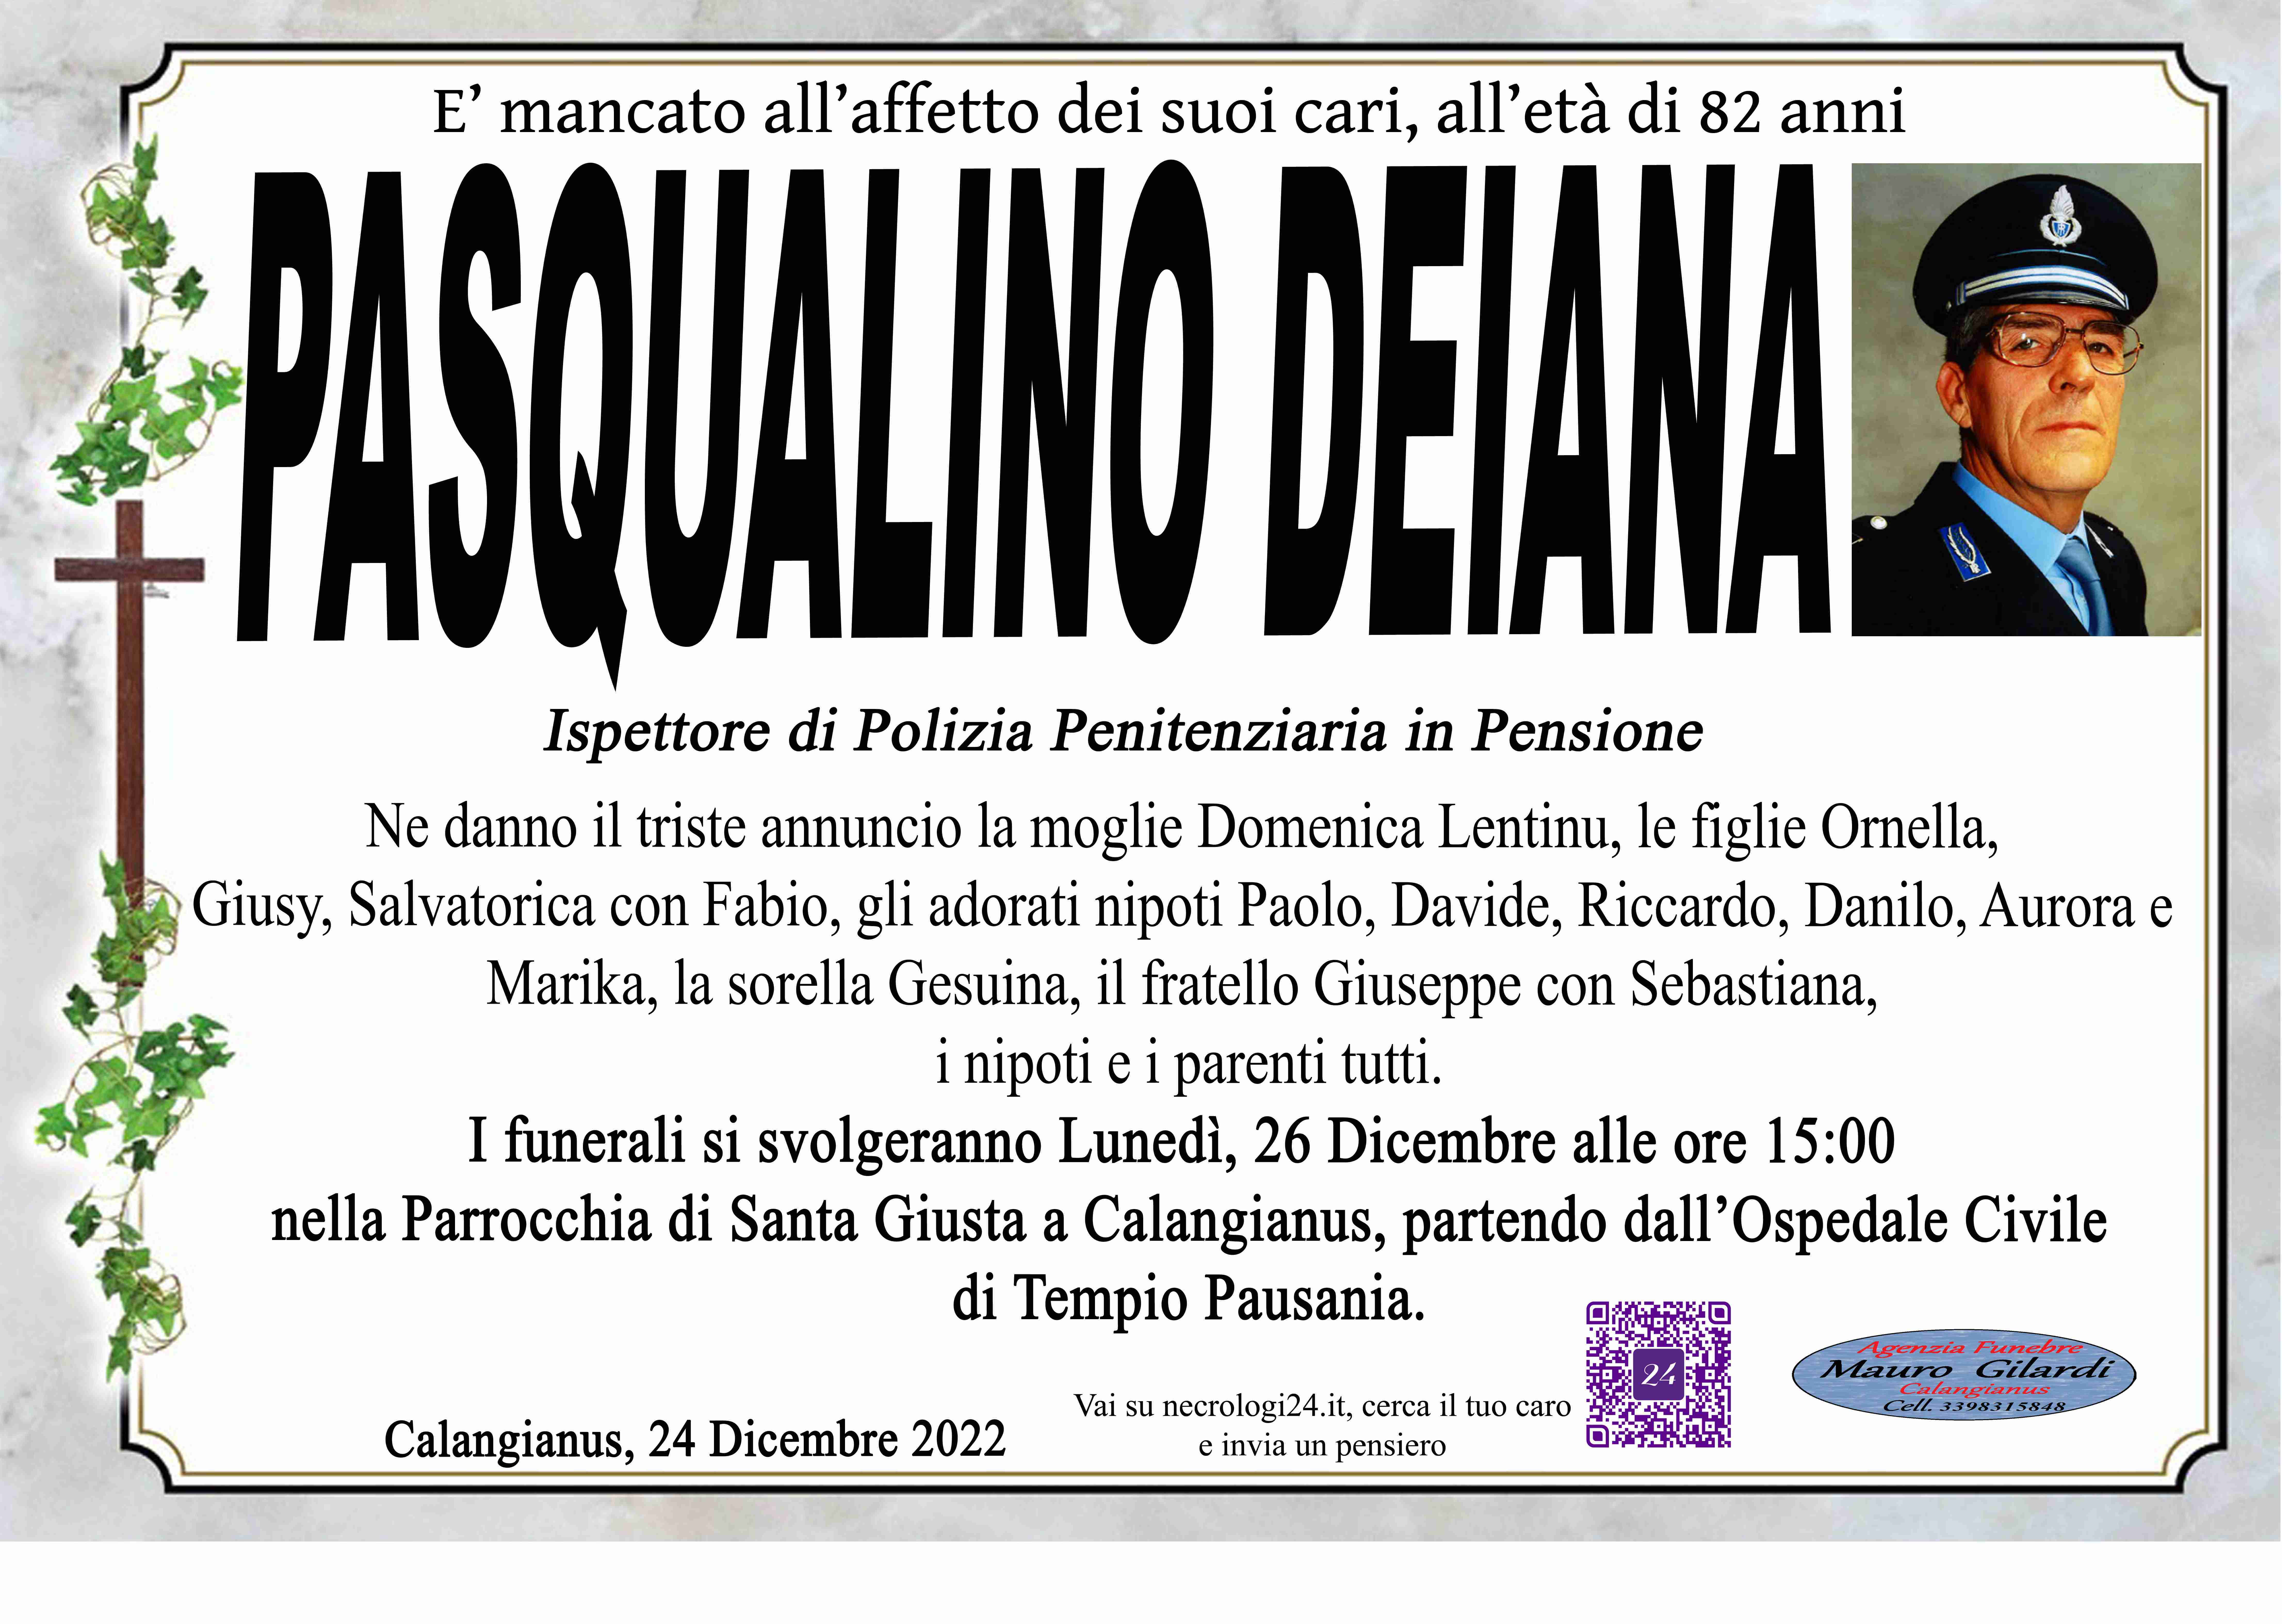 Pasqualino Deiana